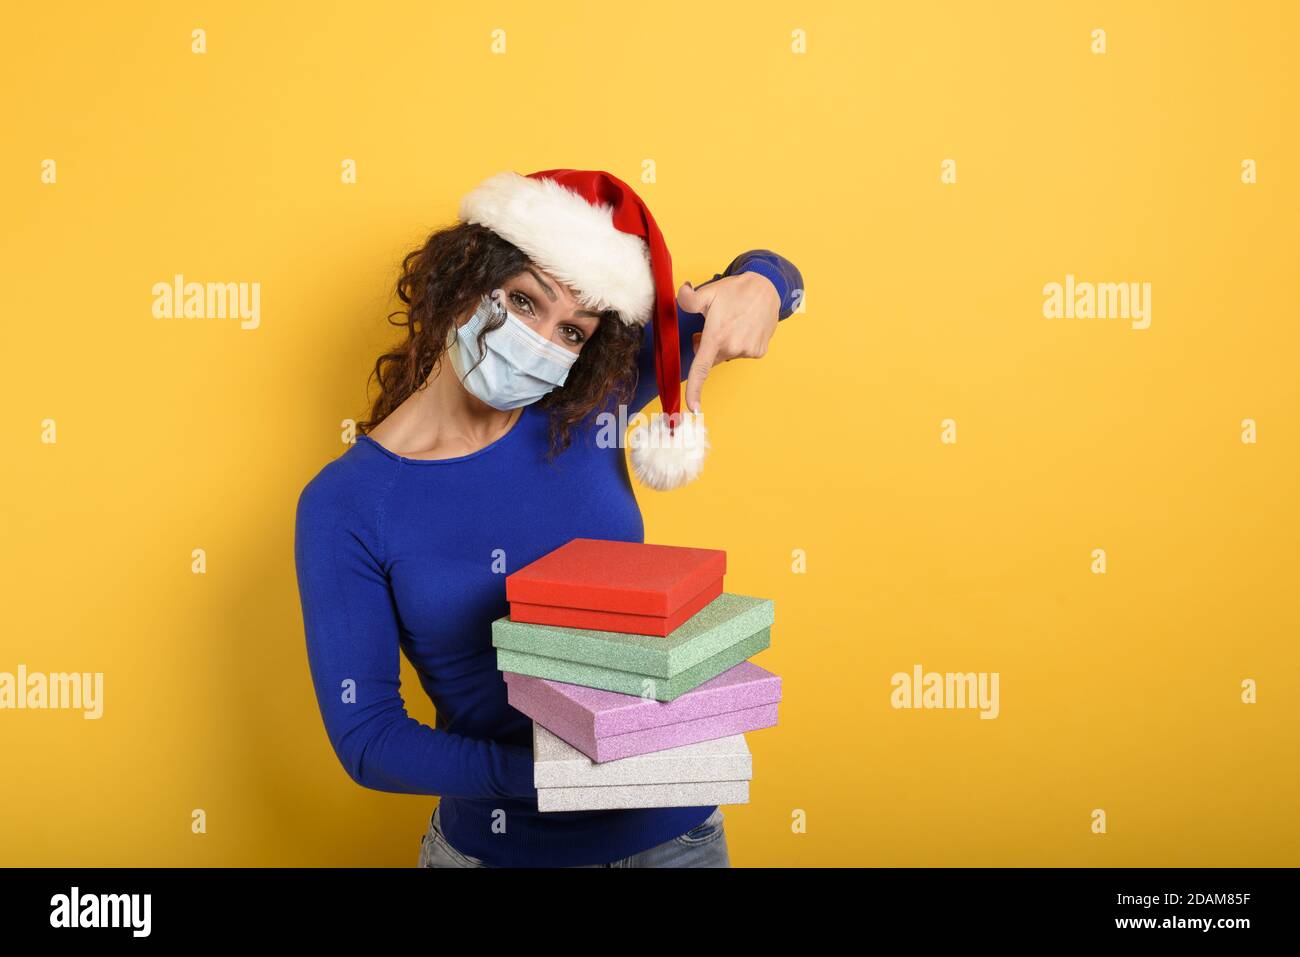 Glückliches Mädchen mit Gesichtsmaske erhält Weihnachtsgeschenke. Gelber Hintergrund Stockfoto